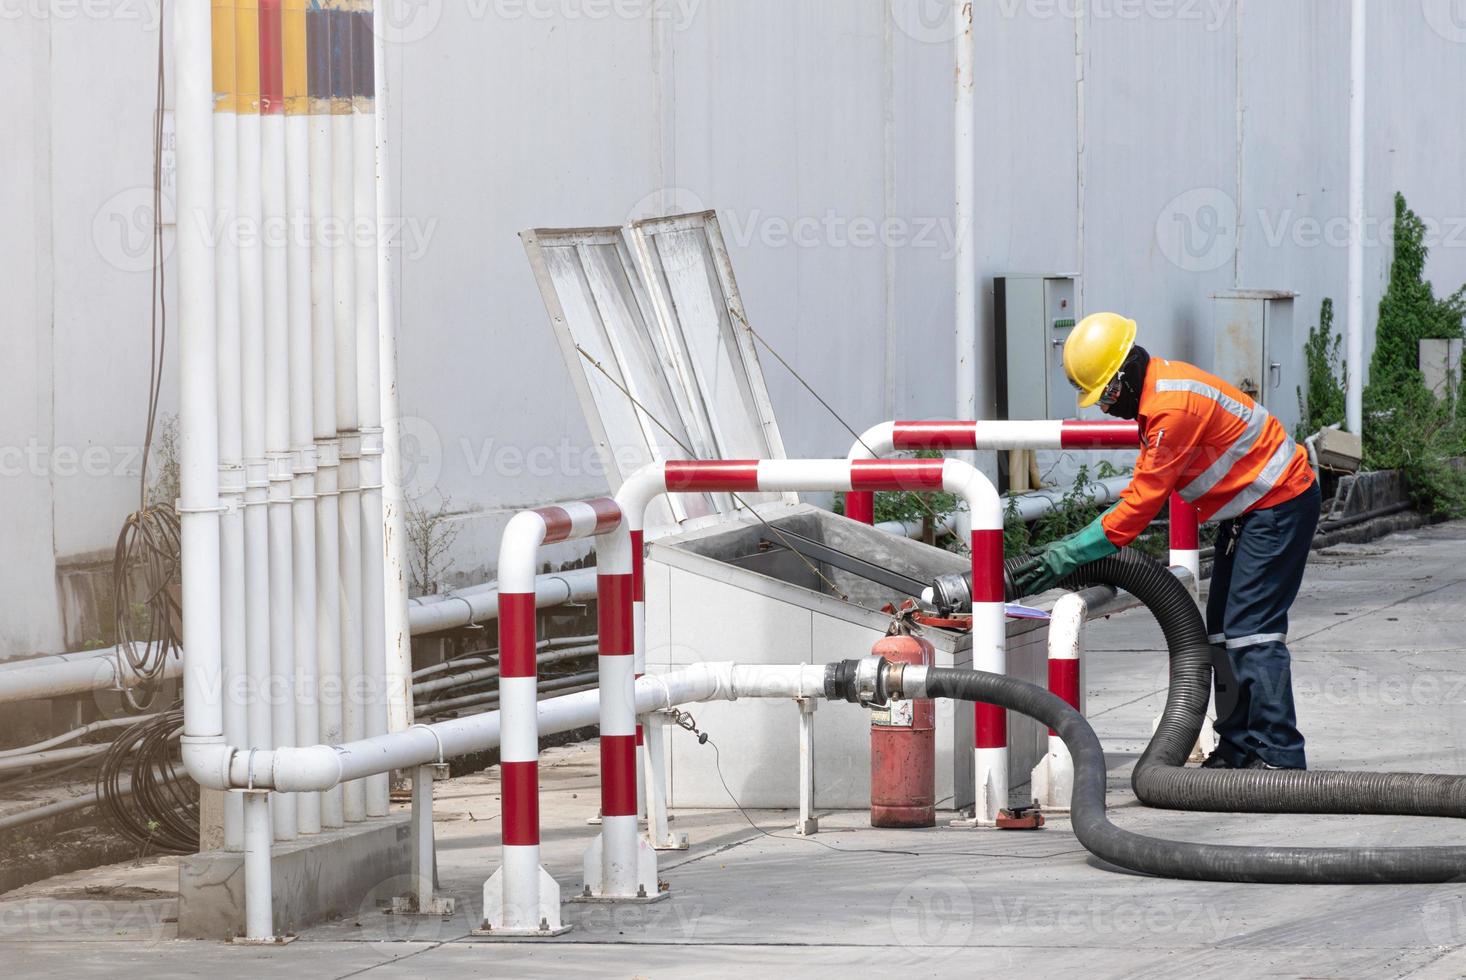 l'ingénieur transfère de l'huile dans le réservoir, se reposant du camion-citerne. photo